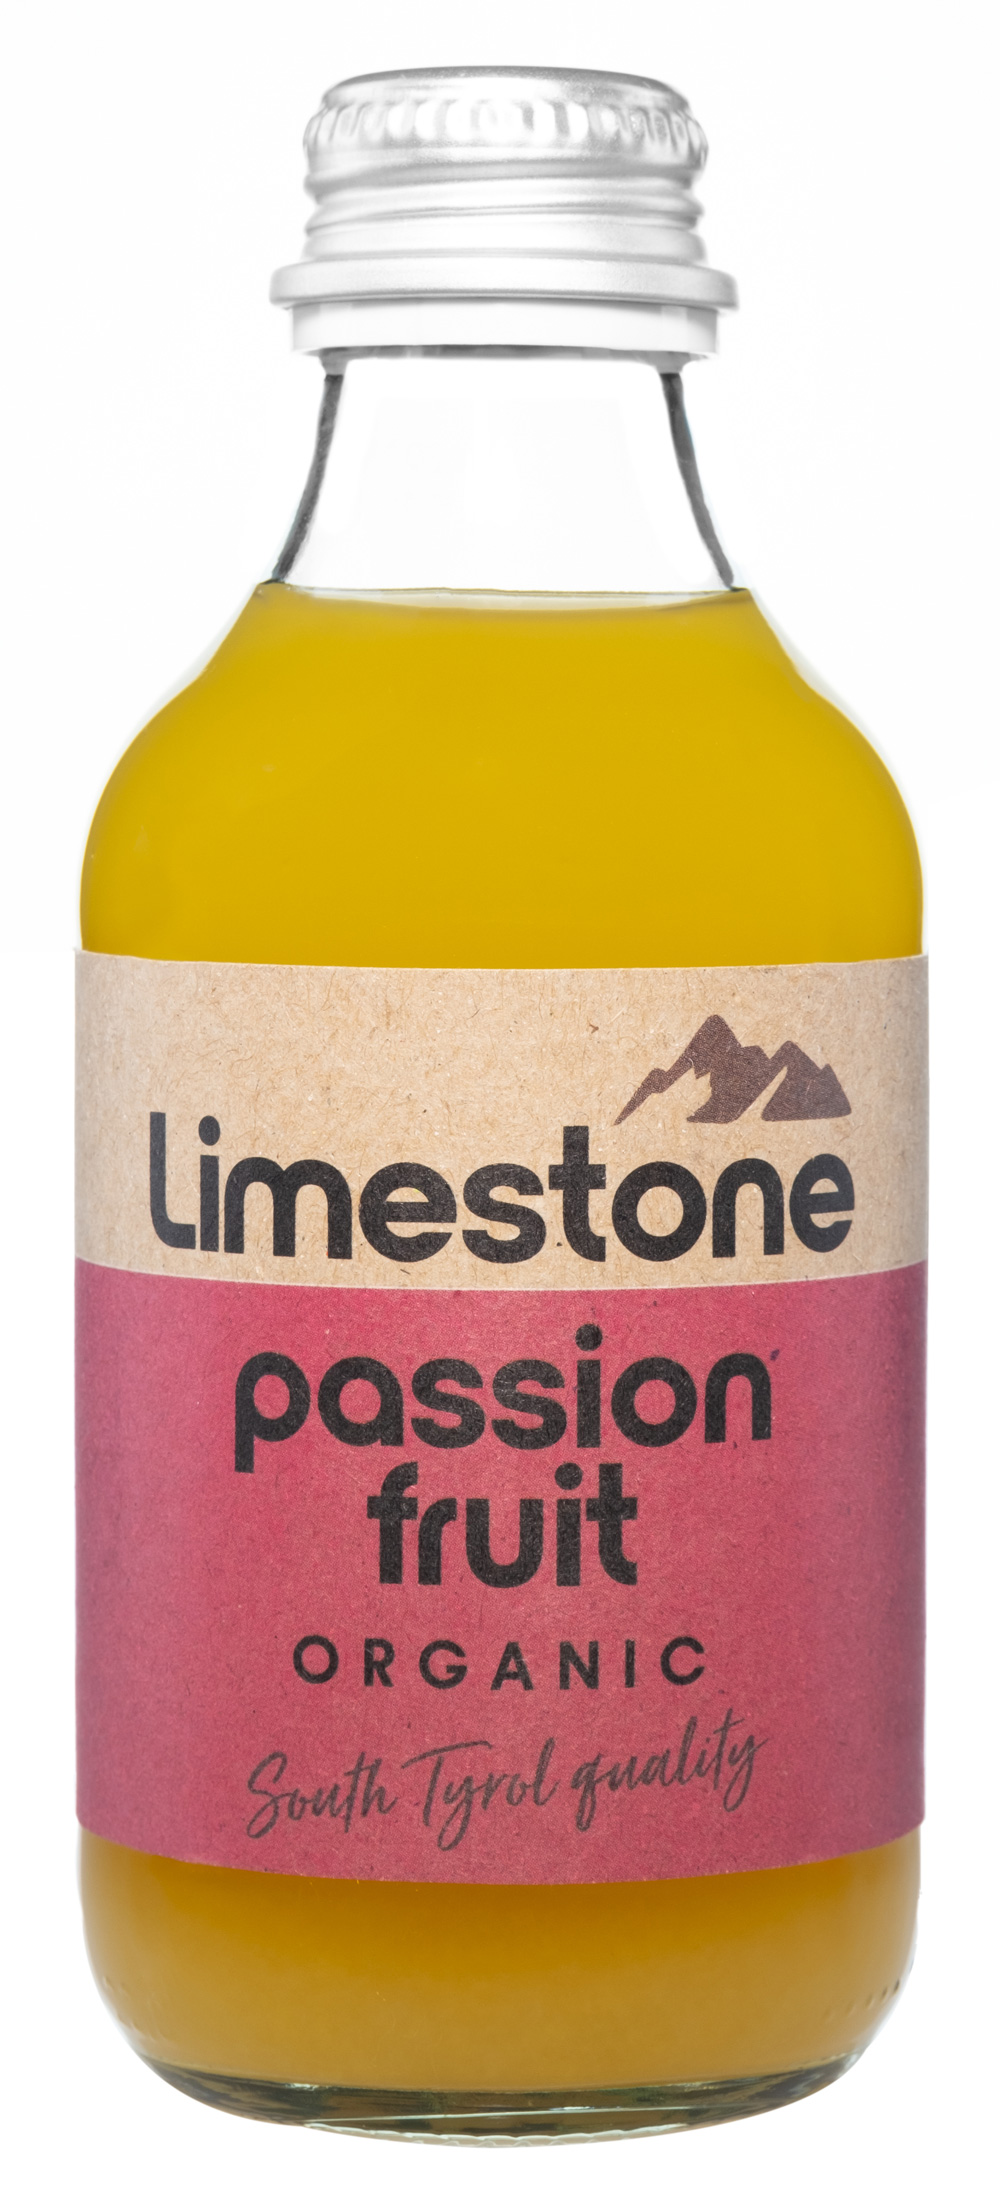 Limestone passion fruit Organic alkoholfrei